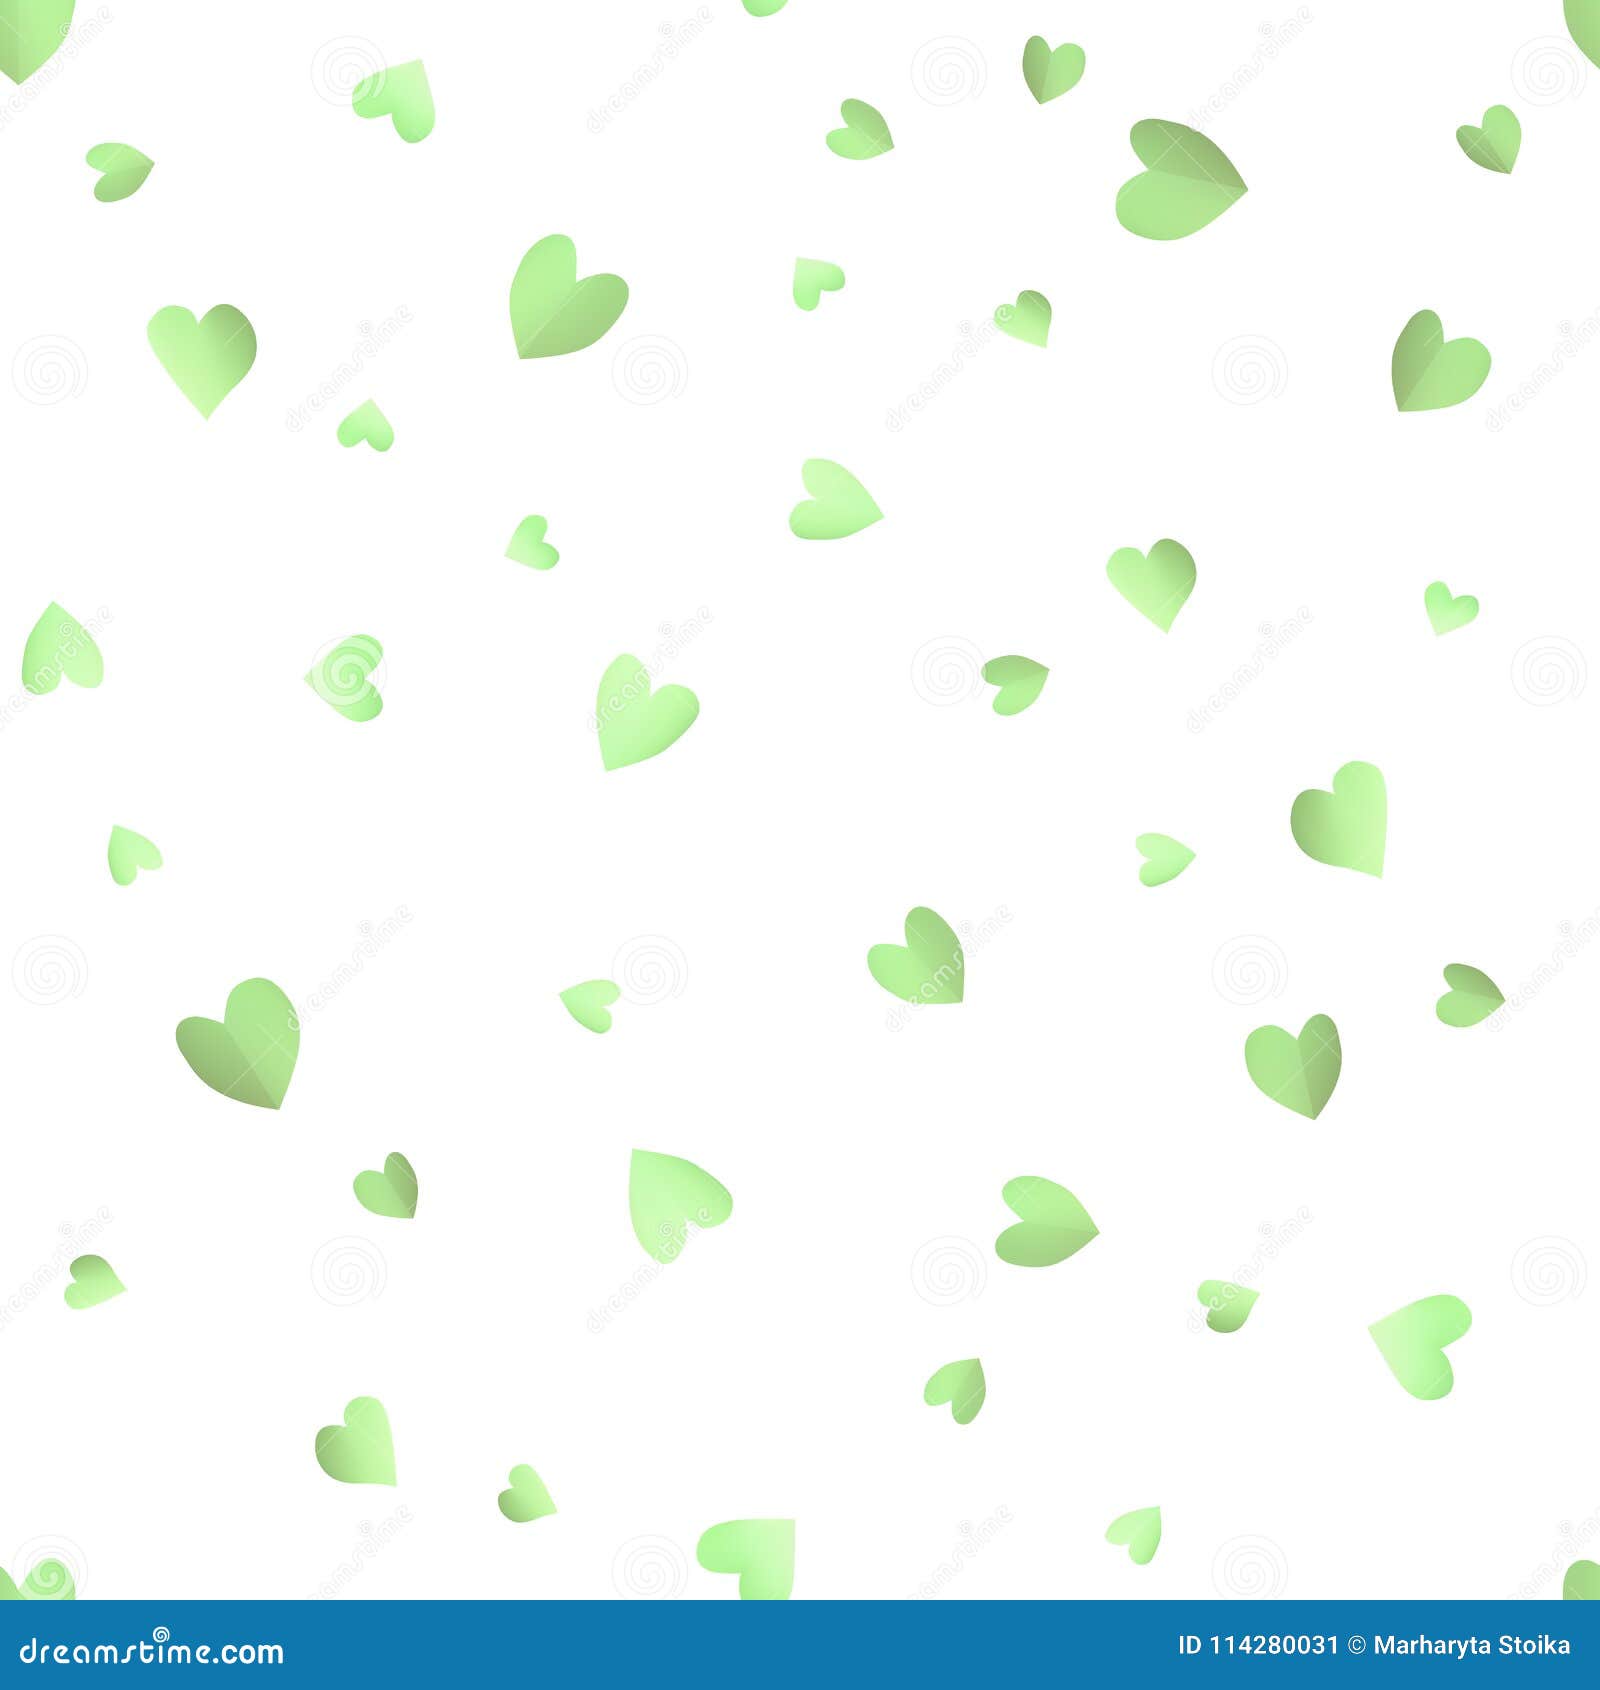 Họa tiết liên tục nền xanh lá cây với hình trái tim là sự kết hợp hoàn hảo giữa mẫu hoa văn độc đáo với màu xanh tươi sáng. Điều này sẽ giúp bạn có một hình nền hoàn hảo cho điện thoại hay máy tính của mình.